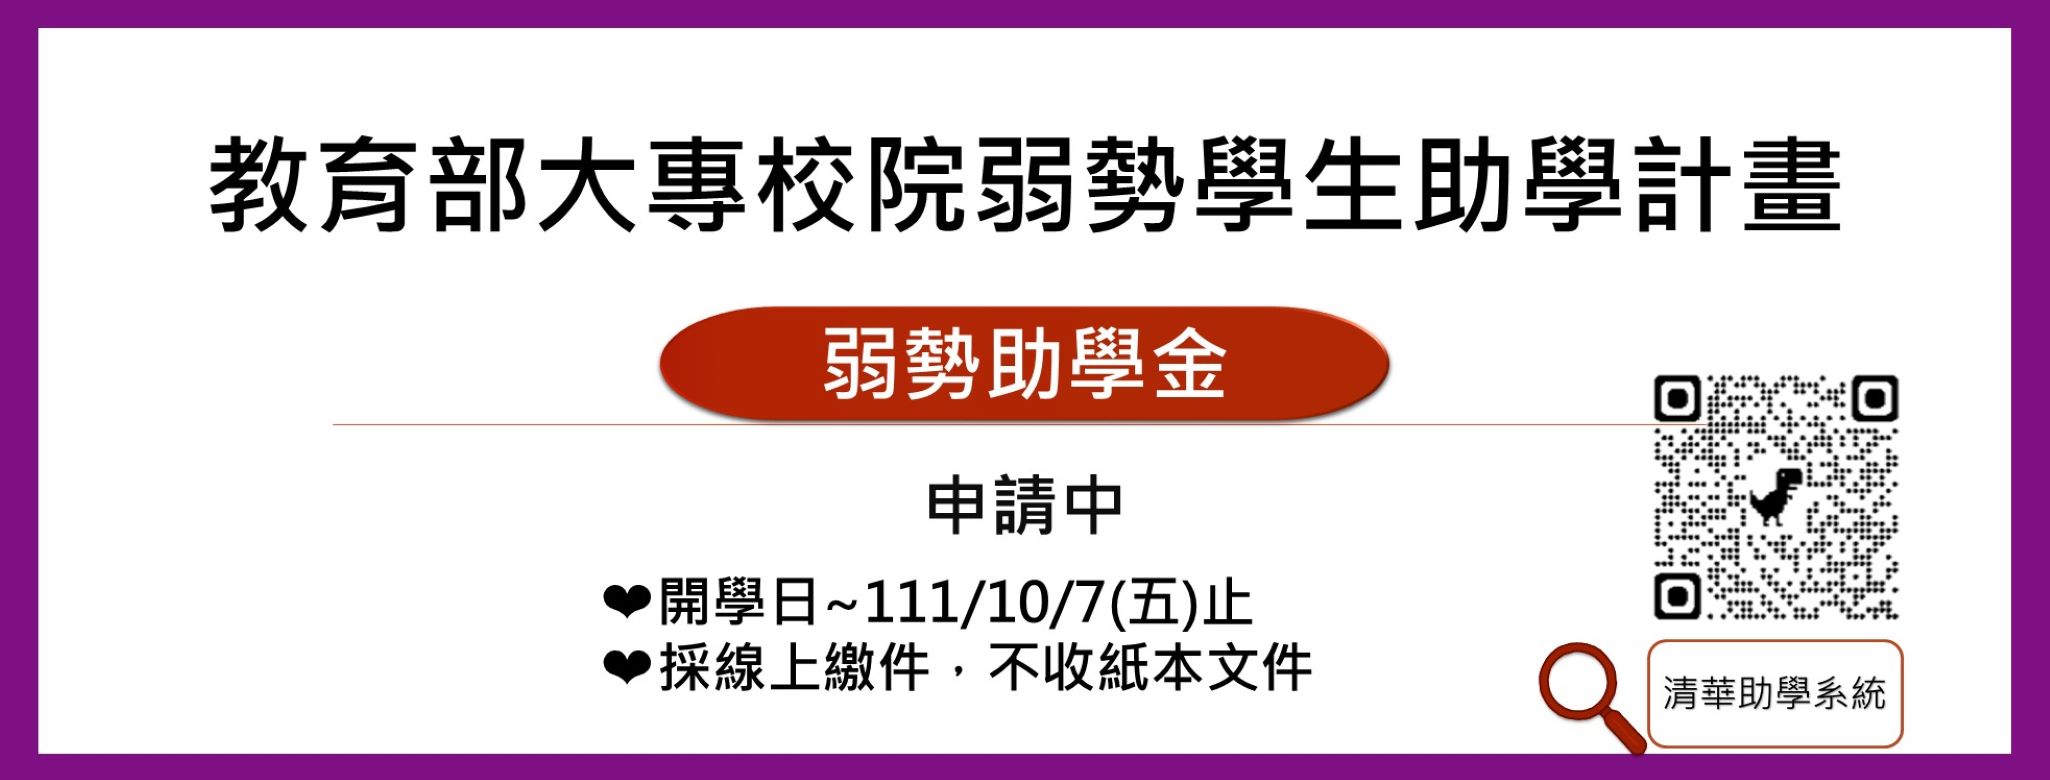 【 弱勢助學金】訂於111/9/12~10/7止，採線上繳件(不收紙本)